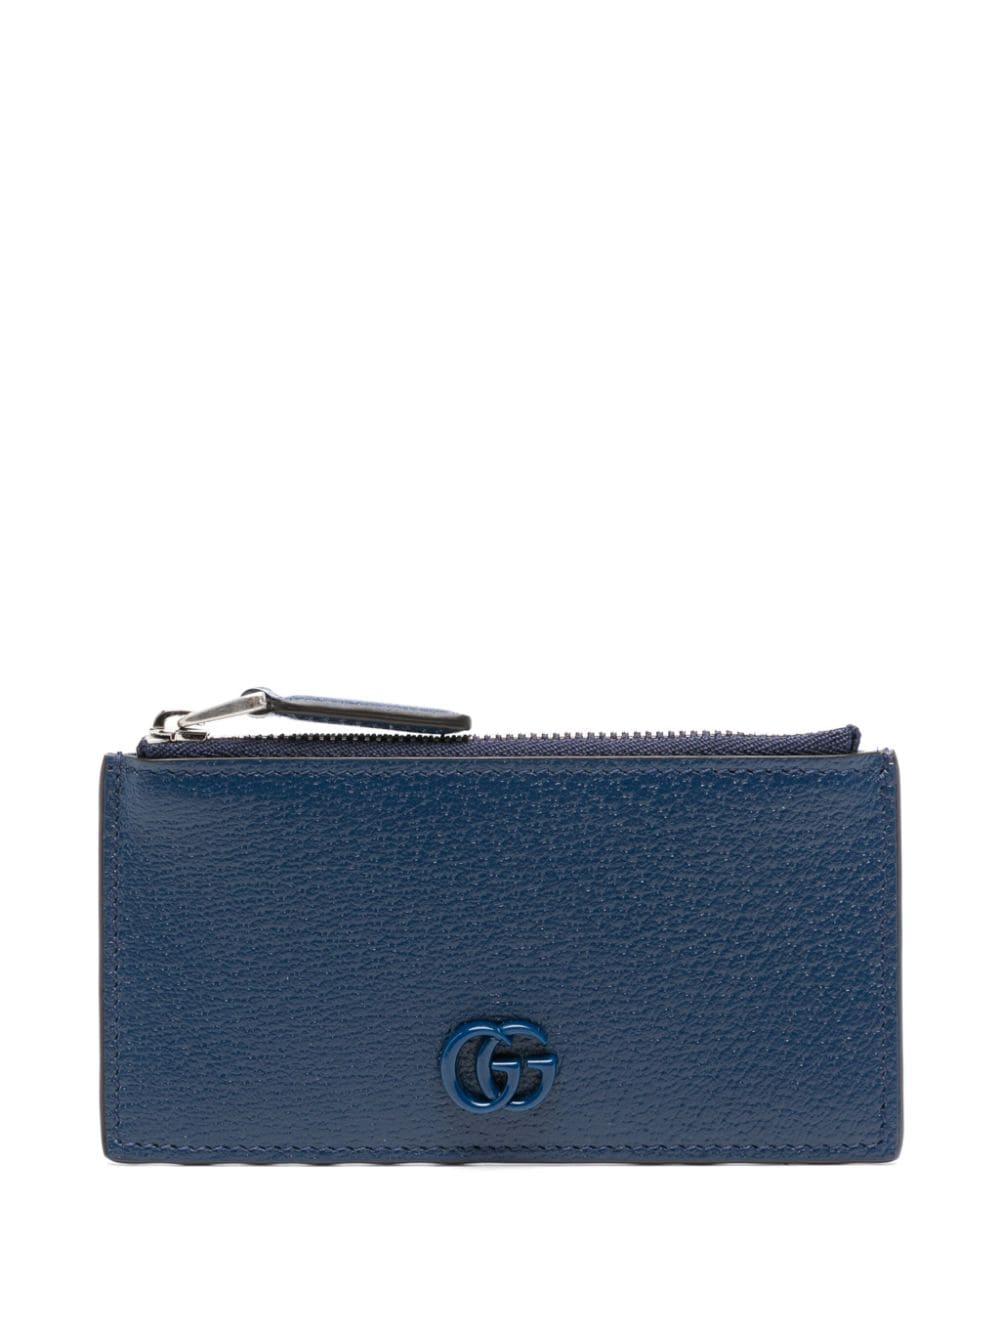 Gucci GG Marmont leather zip wallet - Blue von Gucci